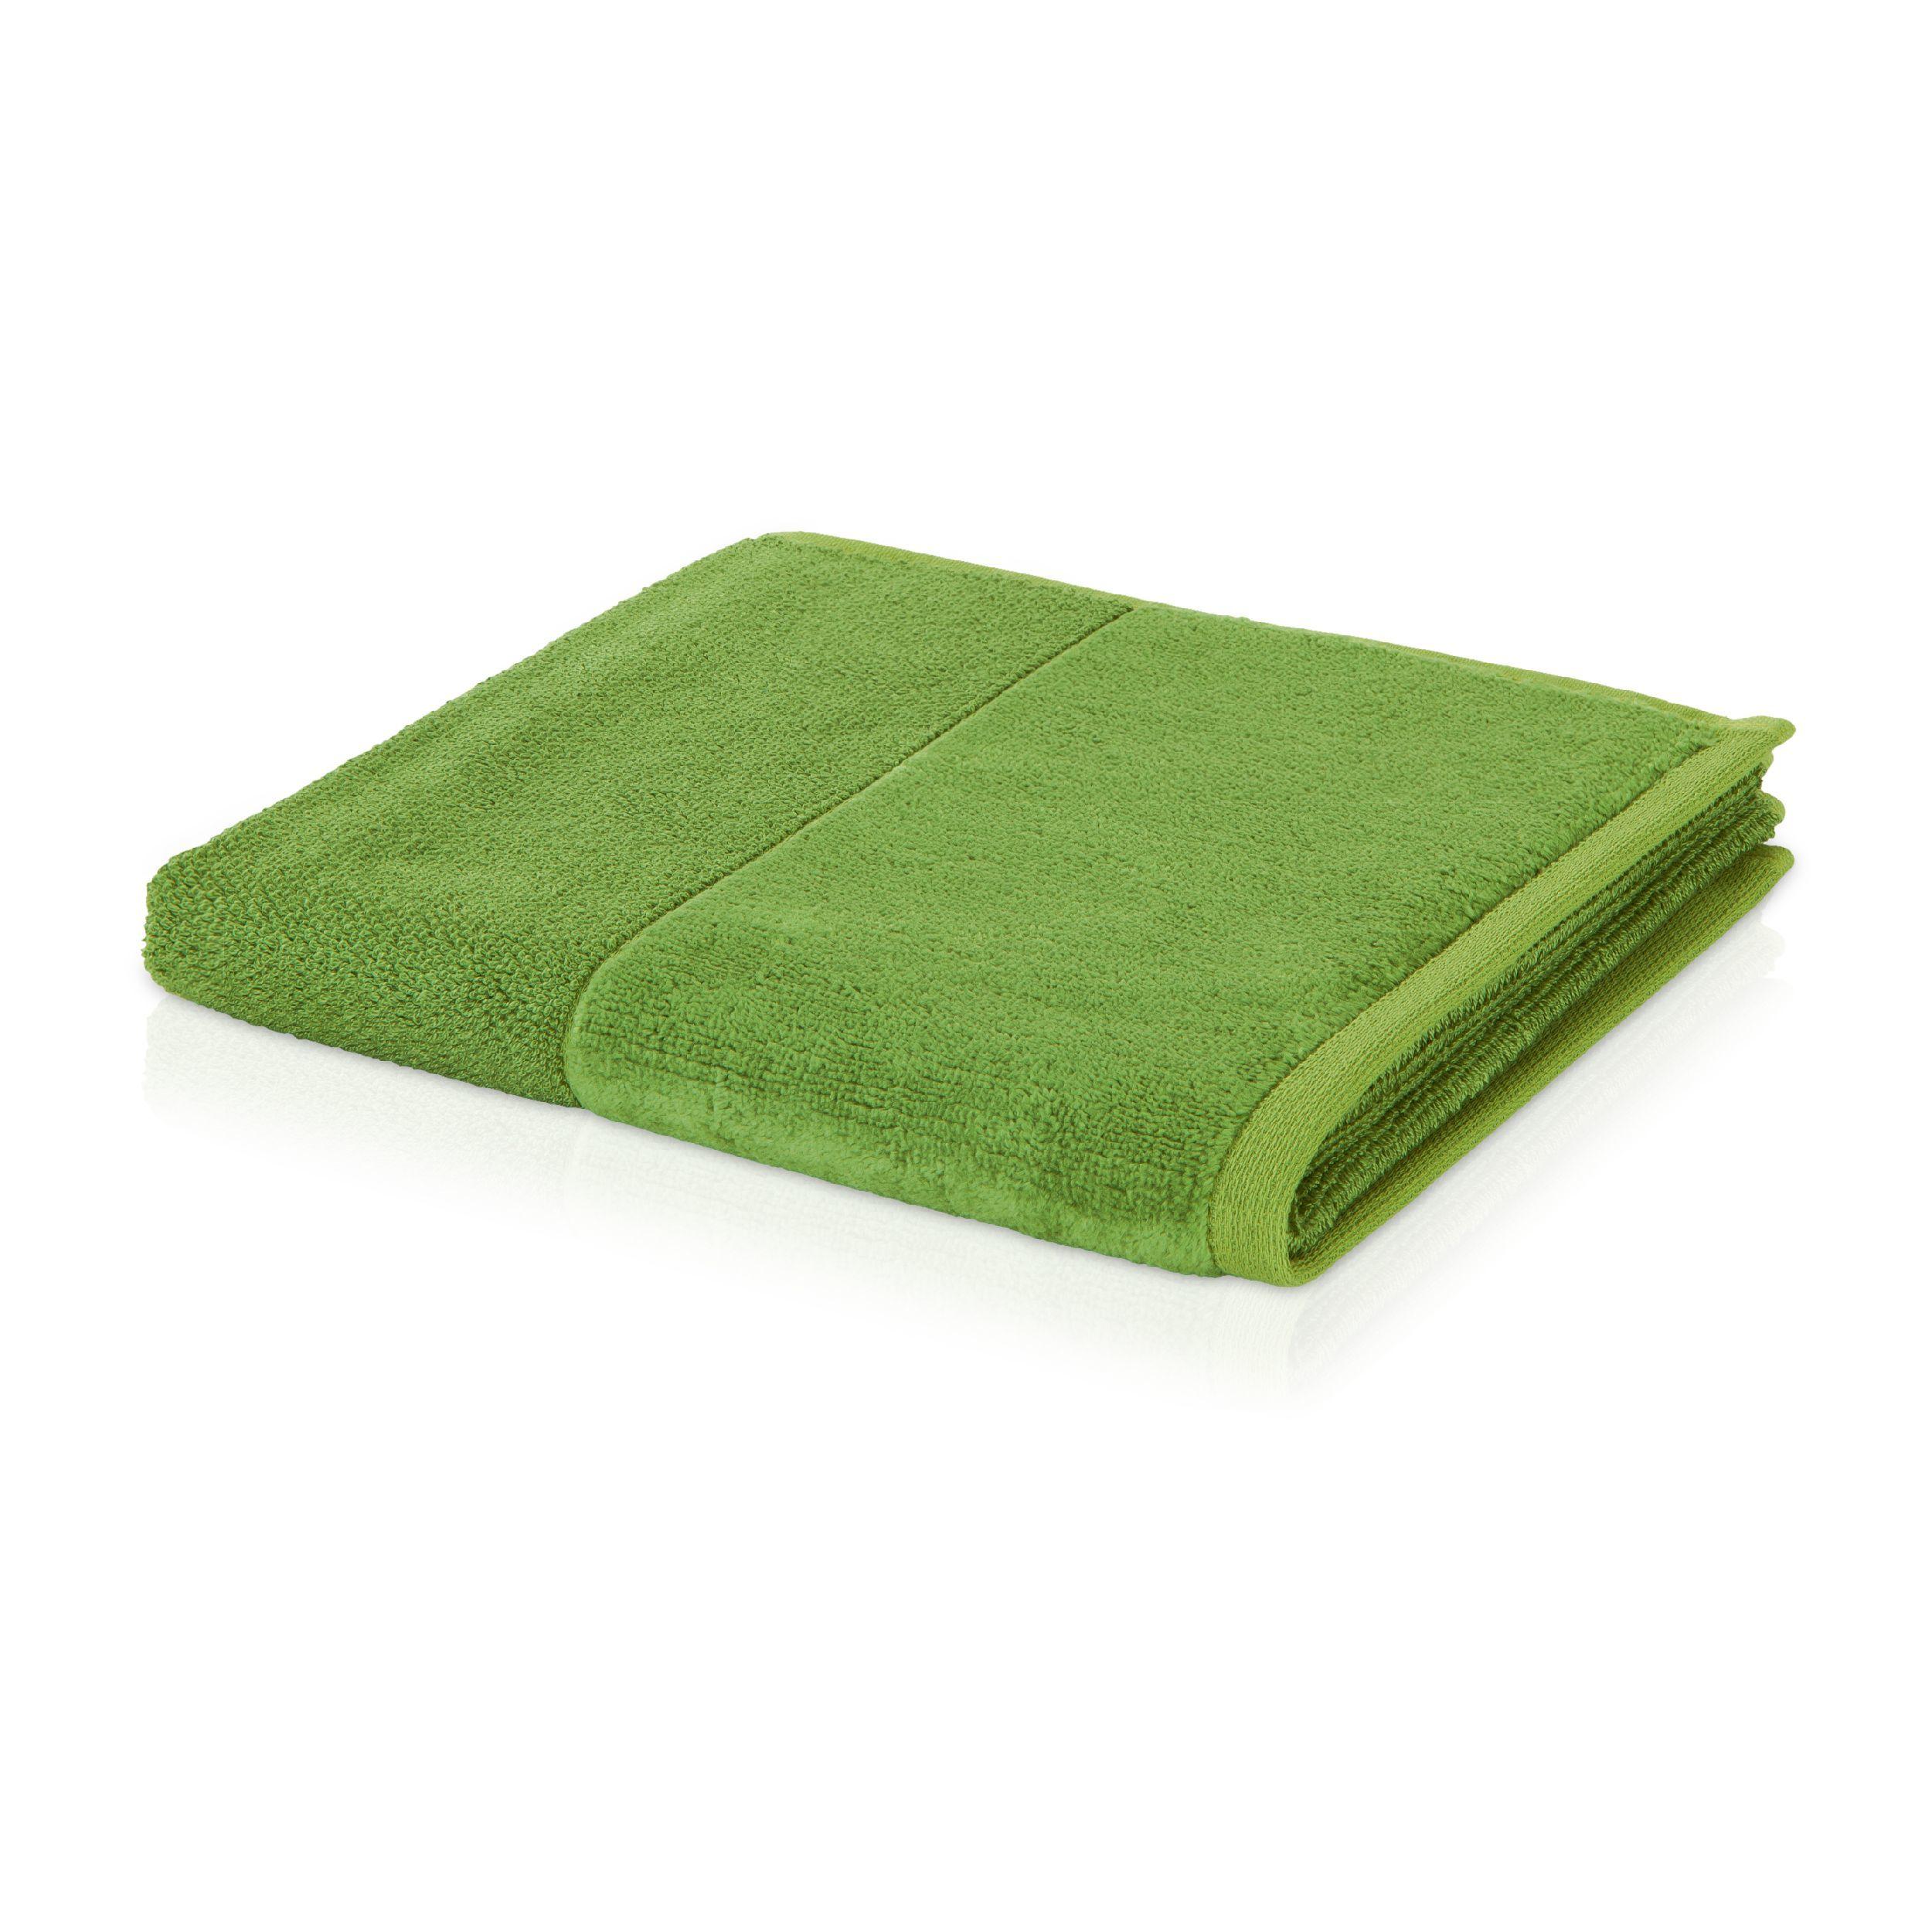 Duschtuch Bamboo Luxe Uni 80/150cm - Grün, Basics, Textil (80/150cm) - Moeve